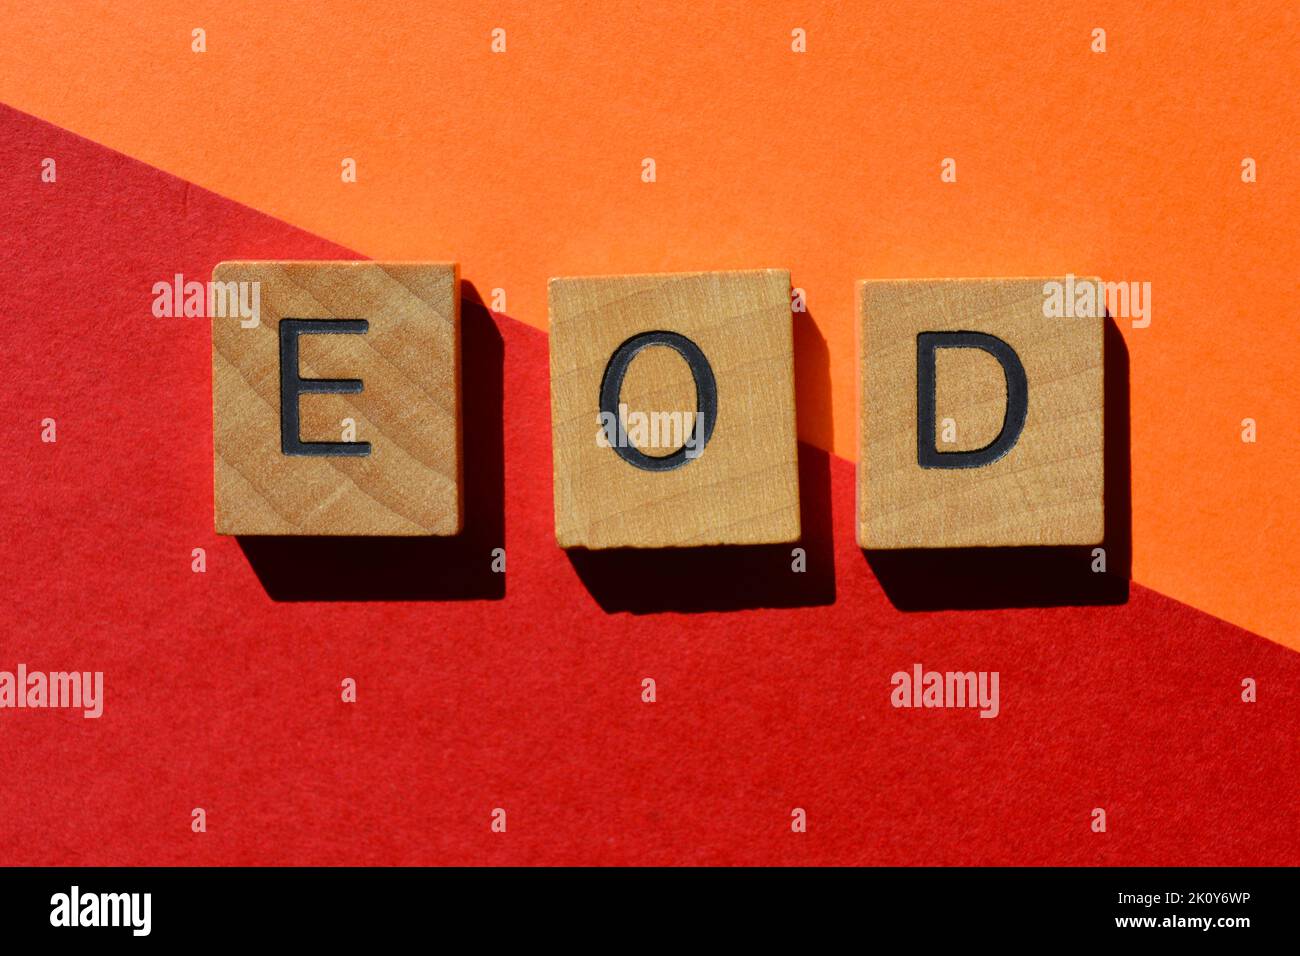 E O D, abreviatura de Fin de día, en letras de alfabeto de madera aisladas sobre fondo Foto de stock